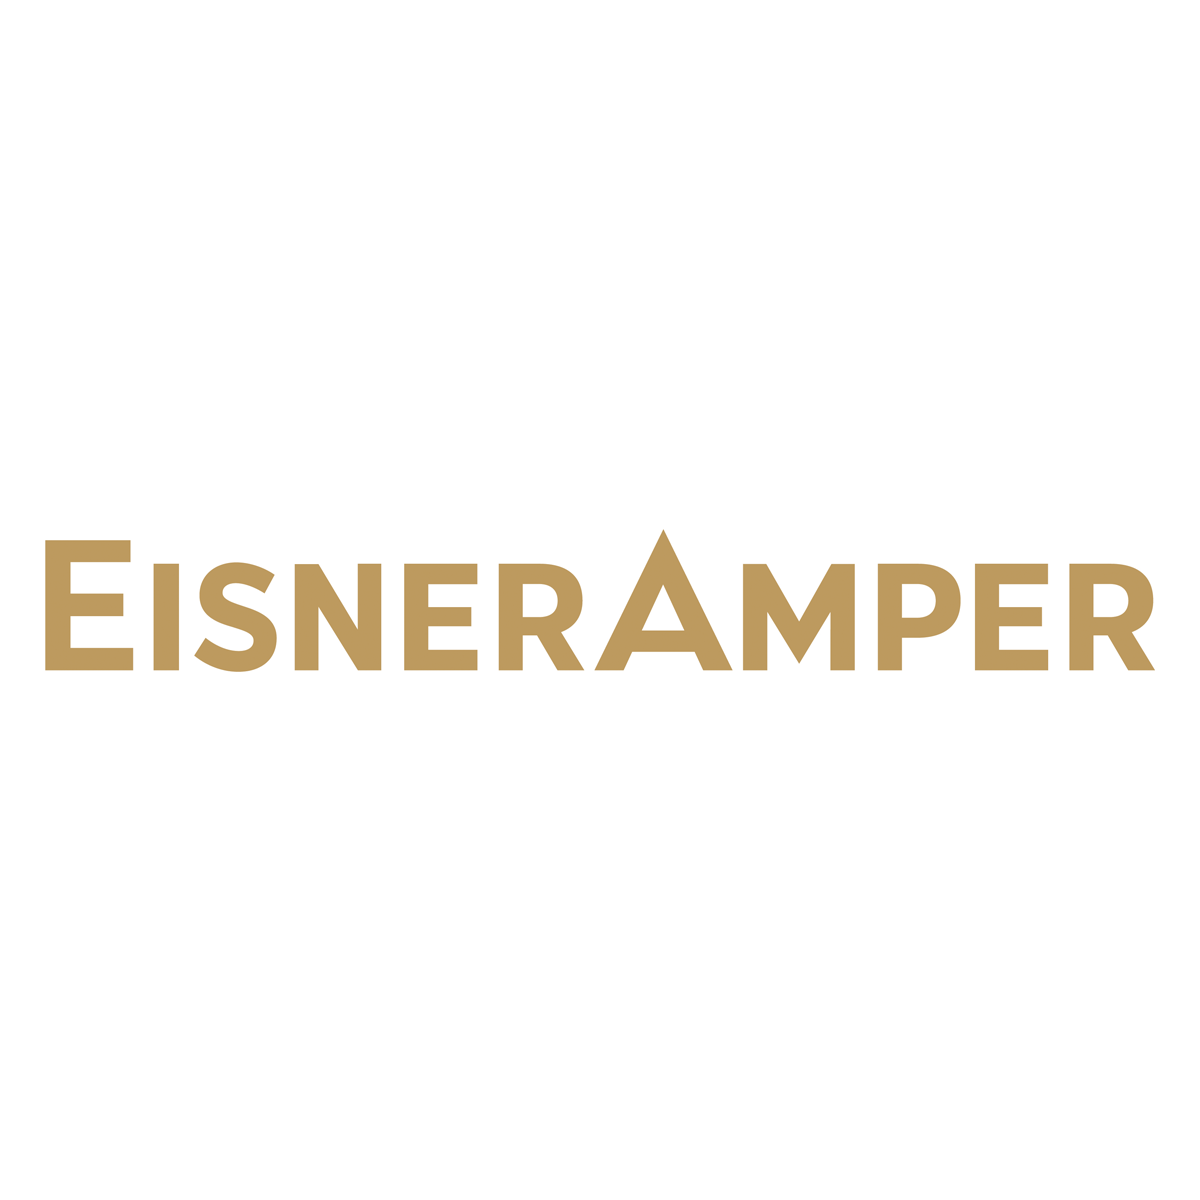 eisneramper-new-og-logo[1]